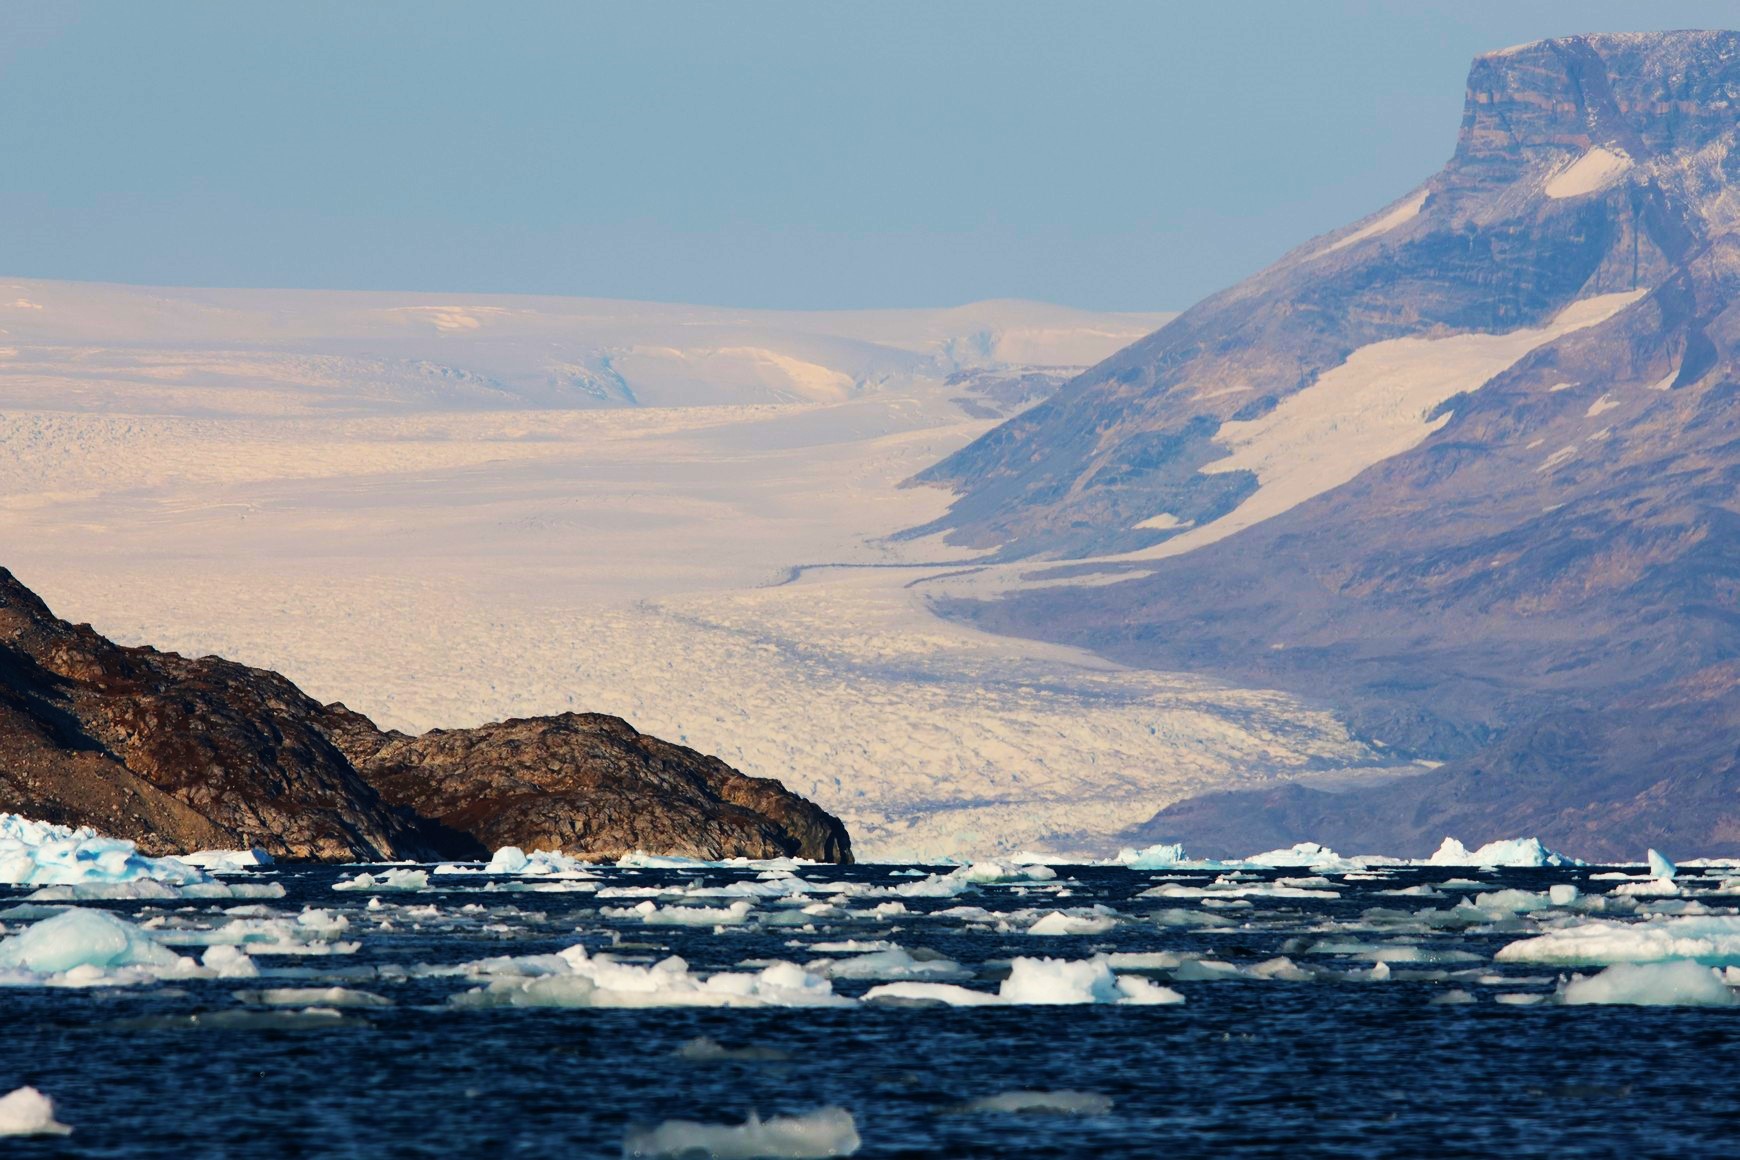 Kangerdluluk, Greenland